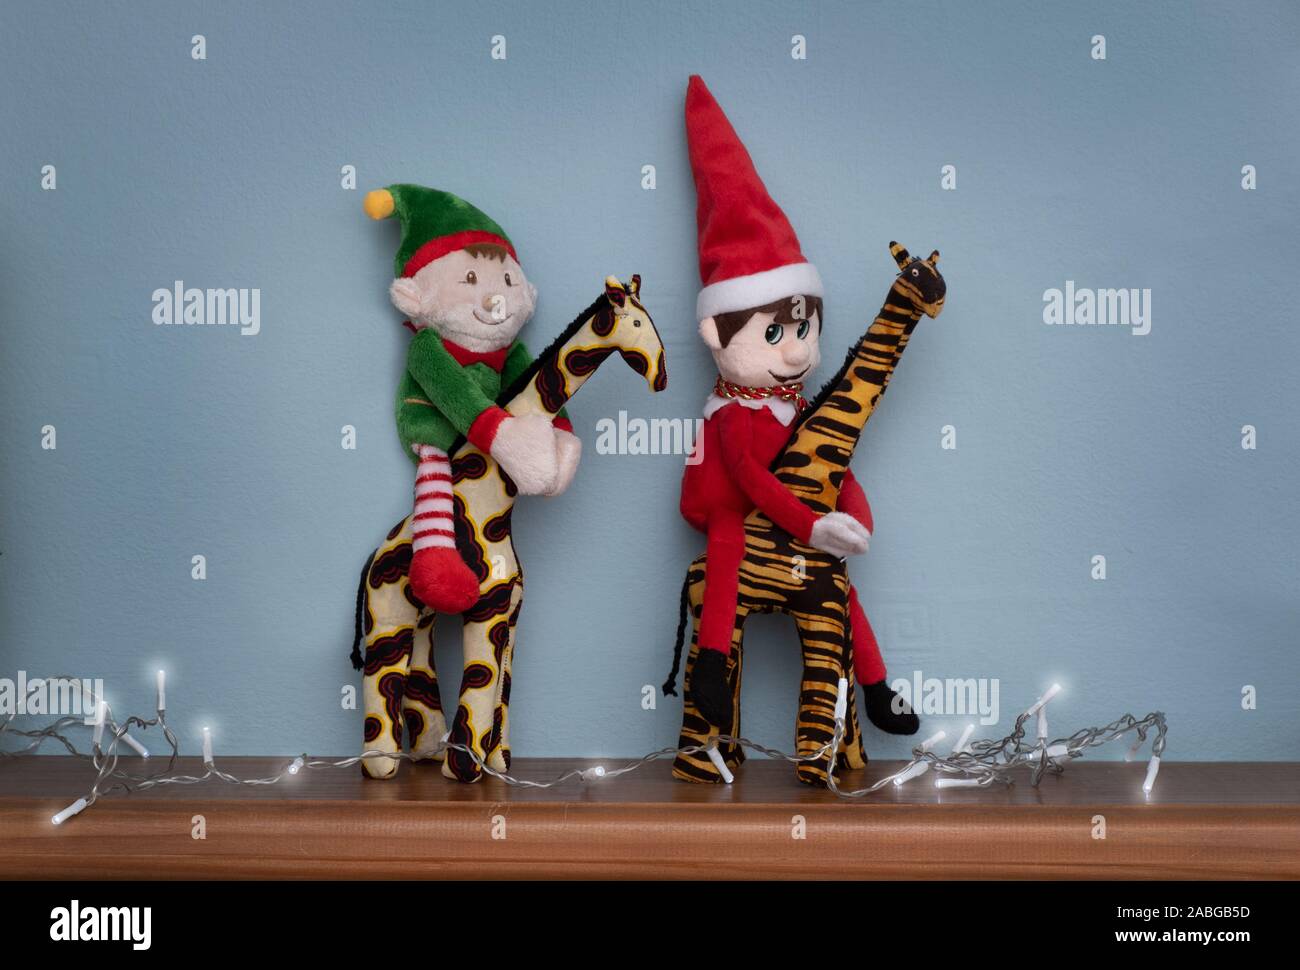 Elf auf Safari, Reiten eine Giraffe, zwei Elfen spielen der Narr. Süße Tradition der Senden Santa's elf auf Kinder zu kurz vor Weihnachten prüfen. Stockfoto